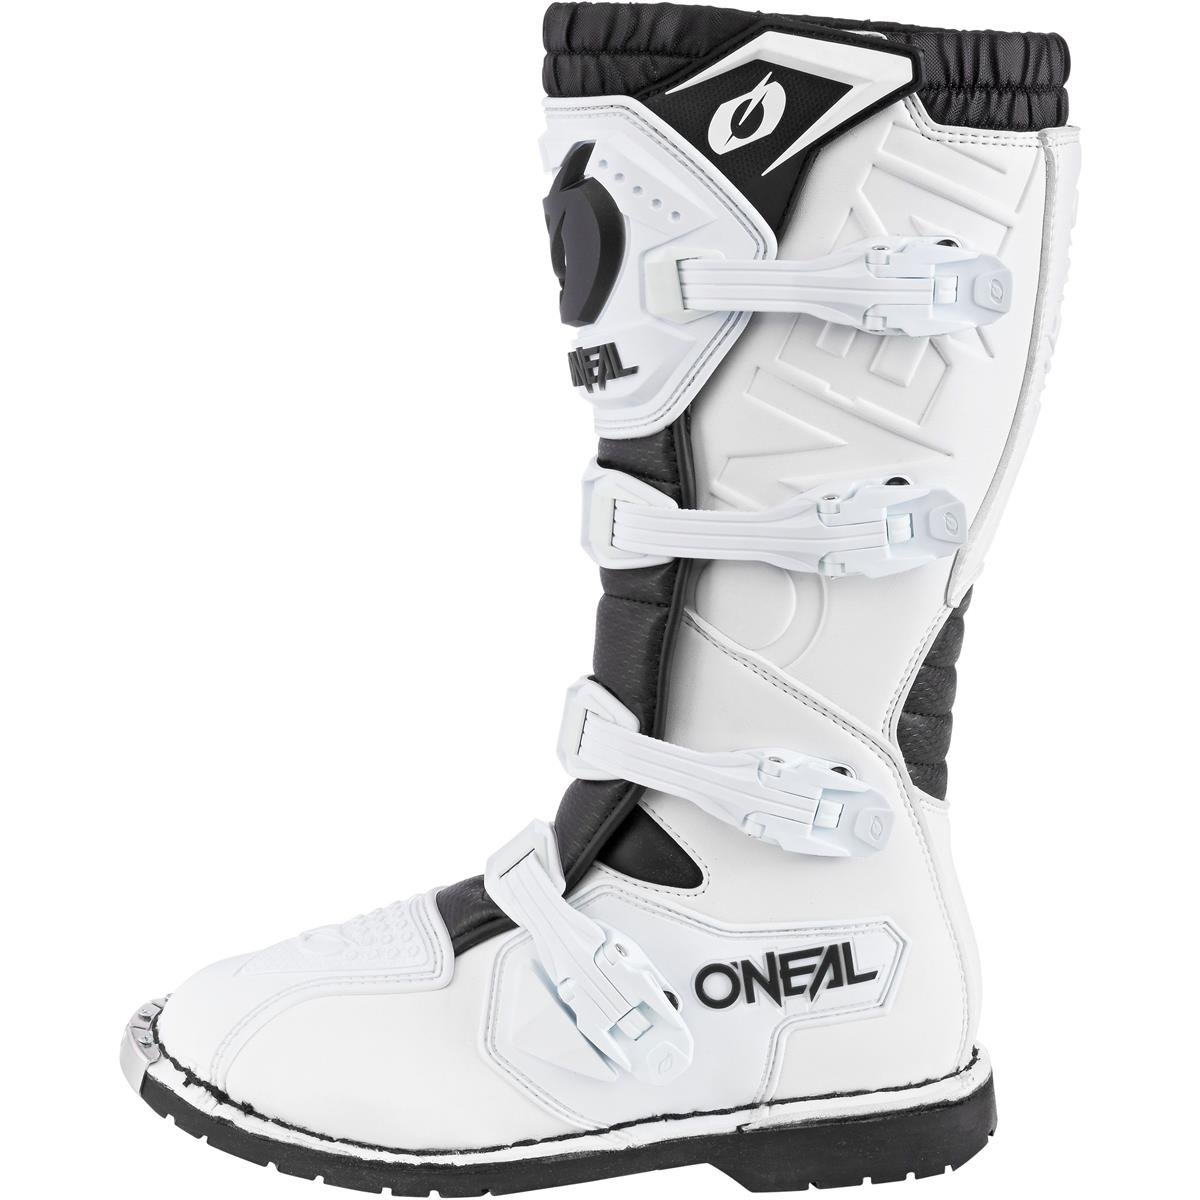 Boots Rider Pro Erwachsene Enduro Motorrad Motocross-Stiefel vier Verschlussschnallen O'NEAL Komfort durch Air-Mesh-Innenleben hochwertiges Synthetik-Material